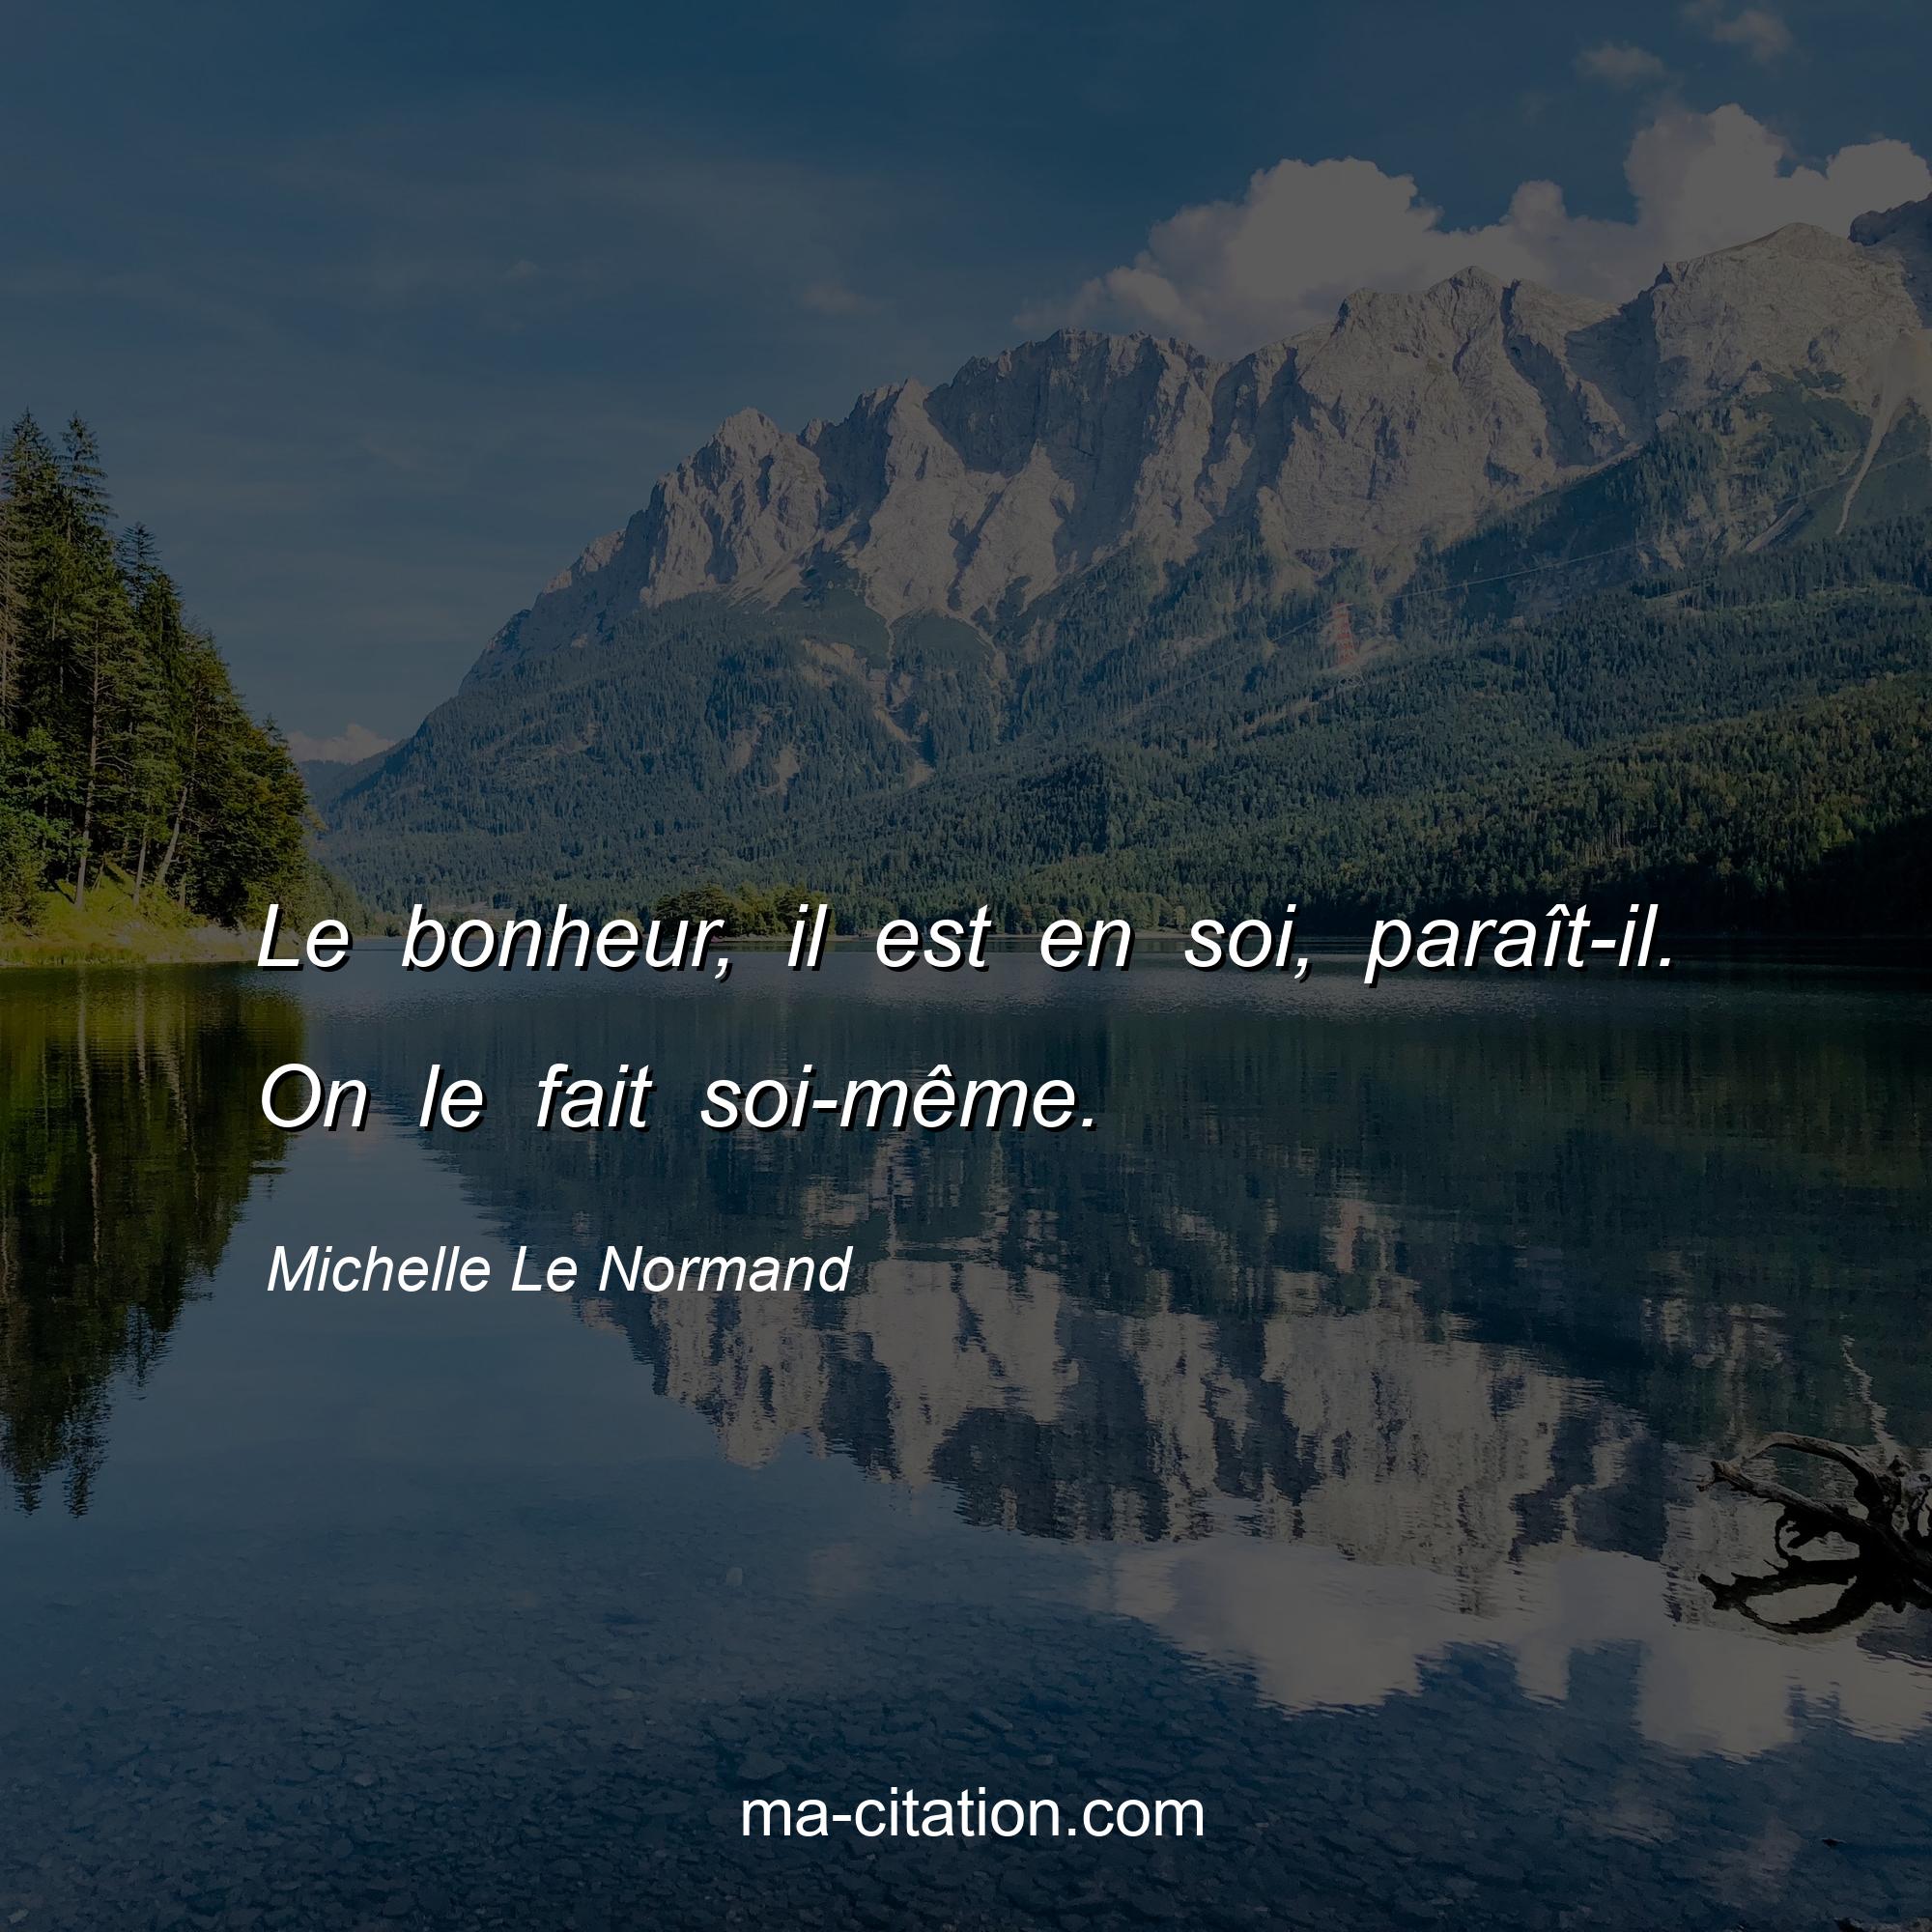 Michelle Le Normand : Le bonheur, il est en soi, paraît-il. On le fait soi-même.